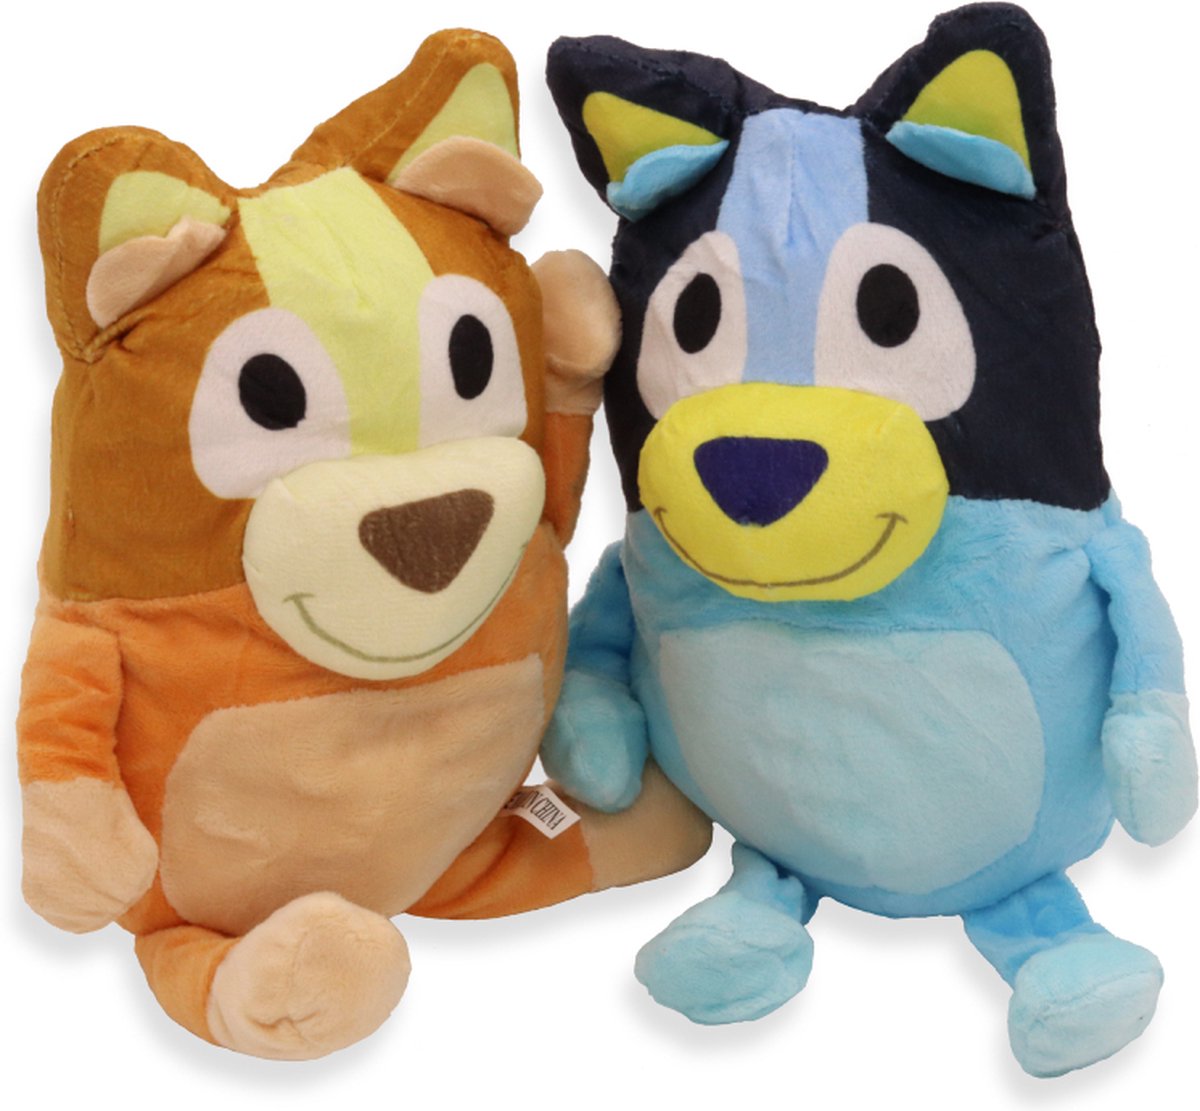 Acheter Anime 28cm Bluey et Bingo chien peluches peluche